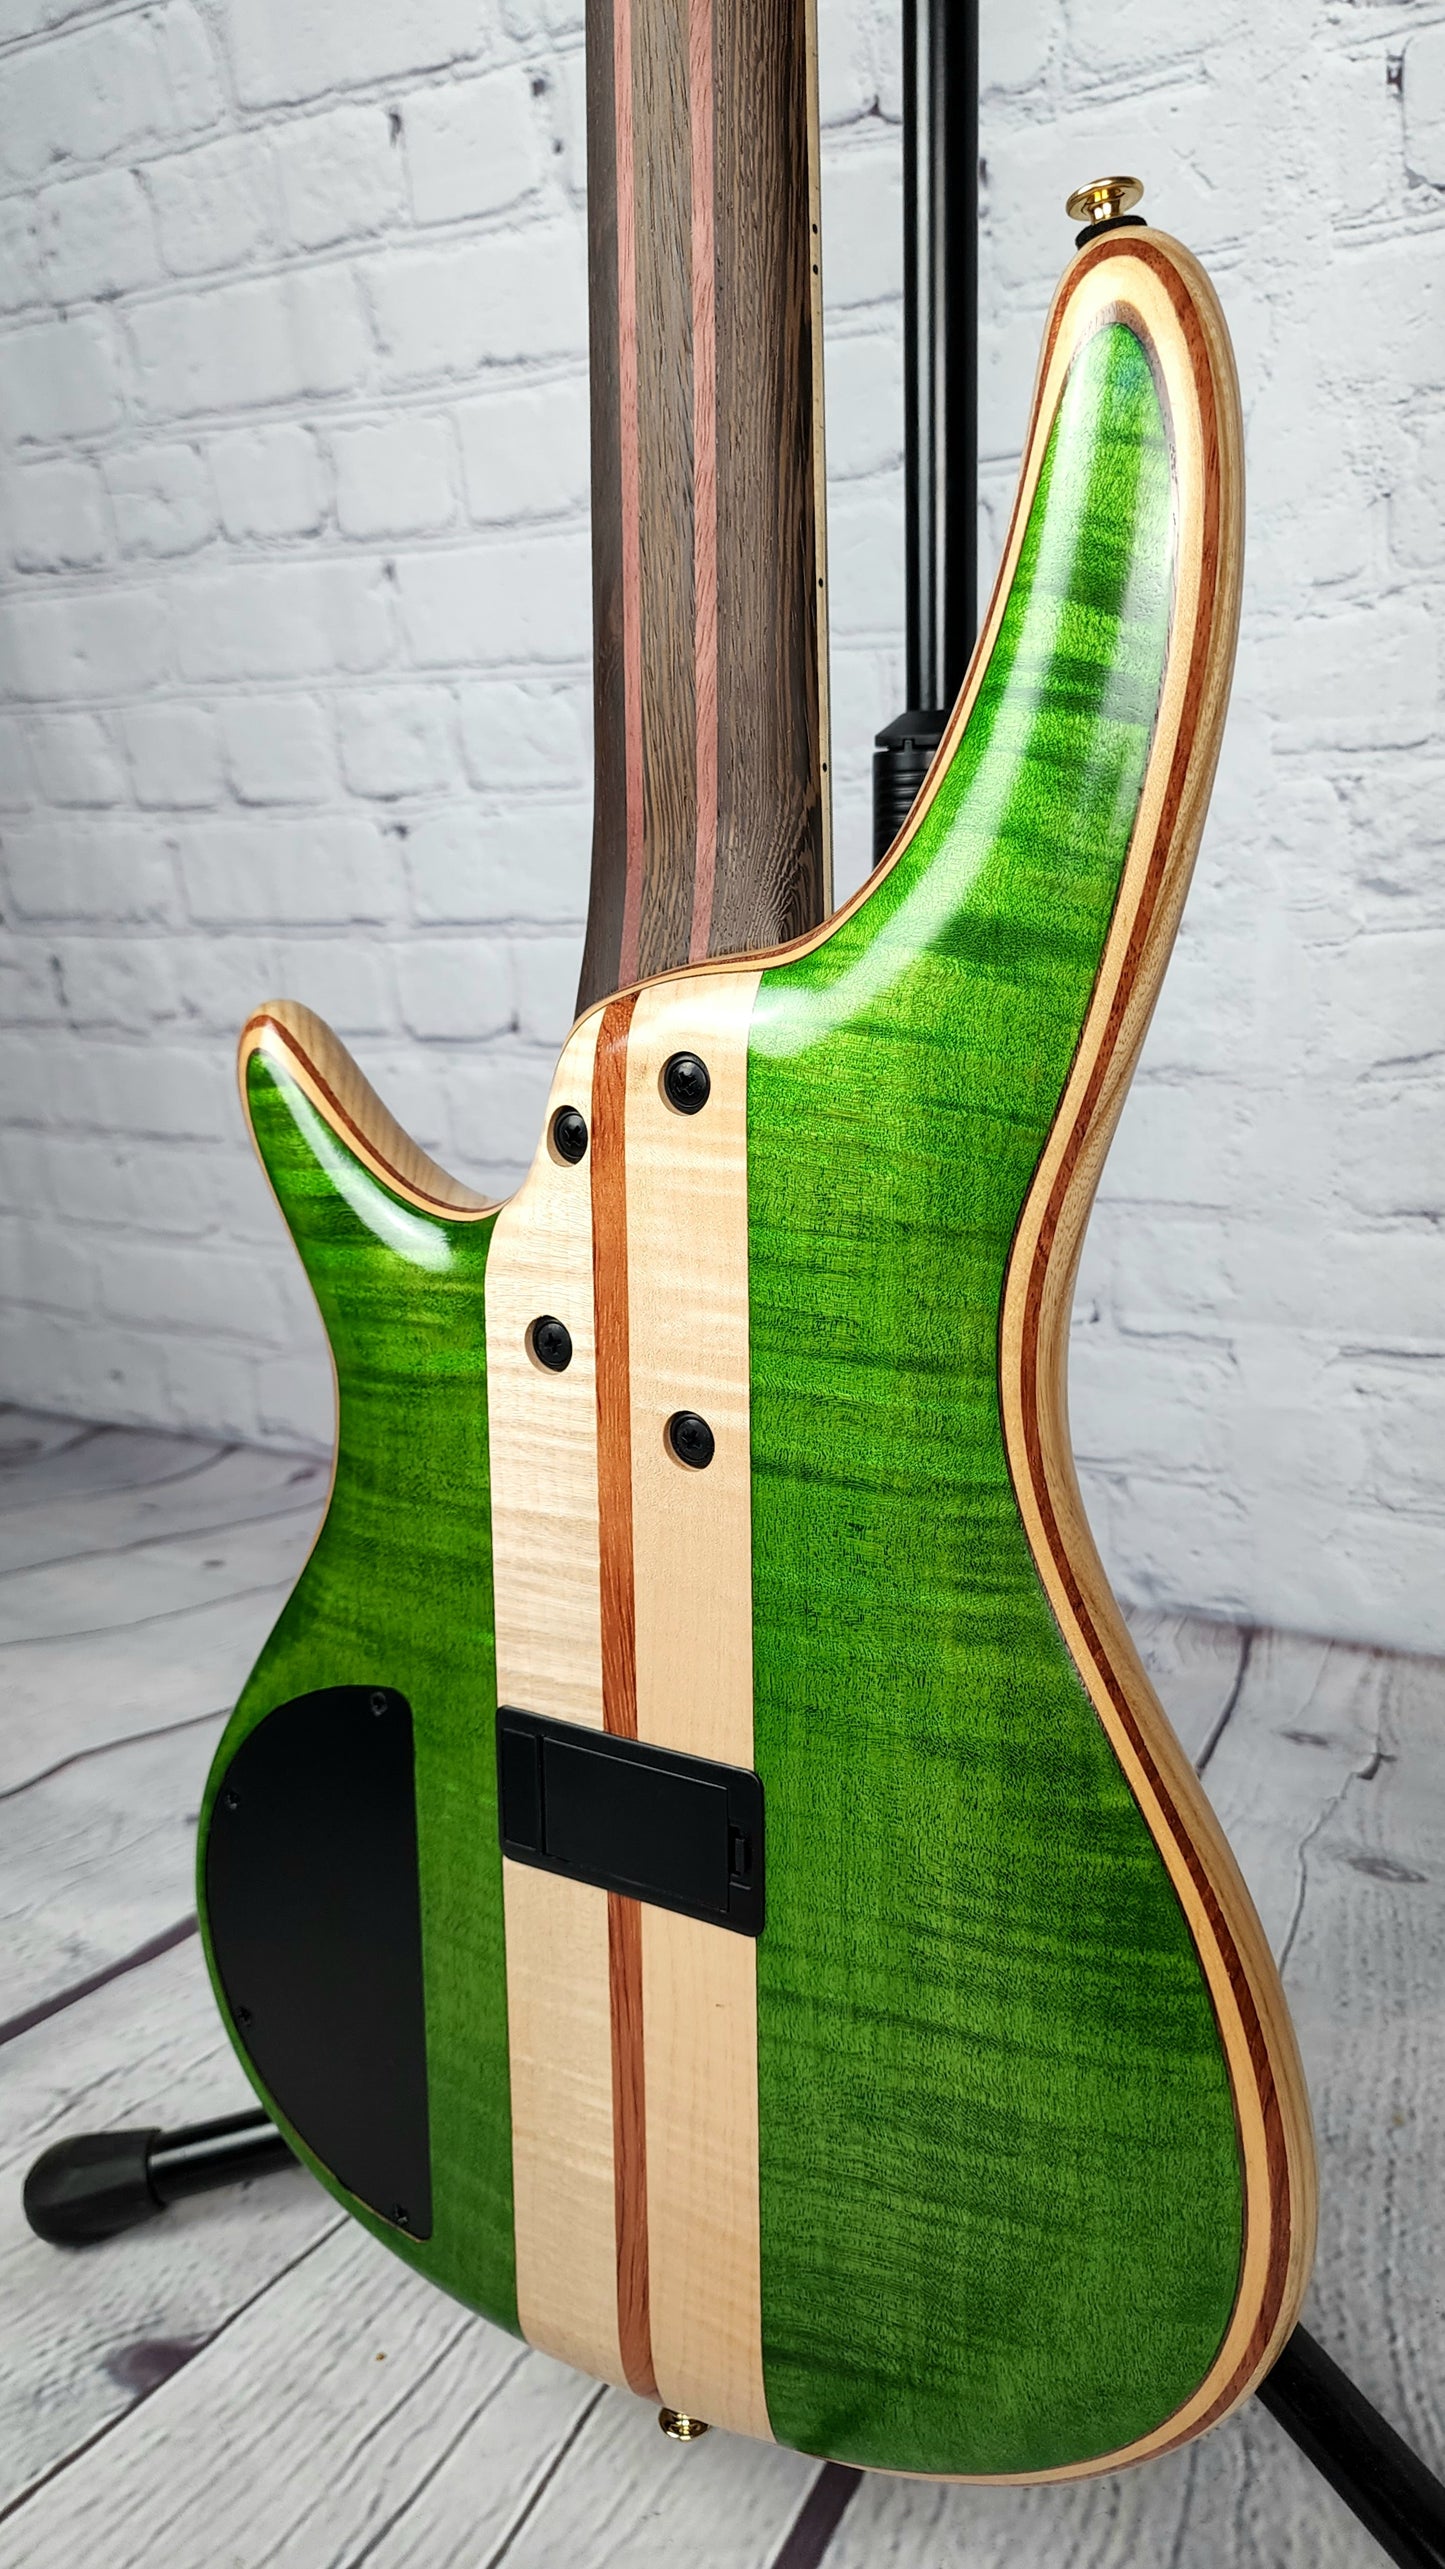 Ibanez Premium SR5FMDX EGL 5 String Bass Guitar Emerald Green Low Gloss